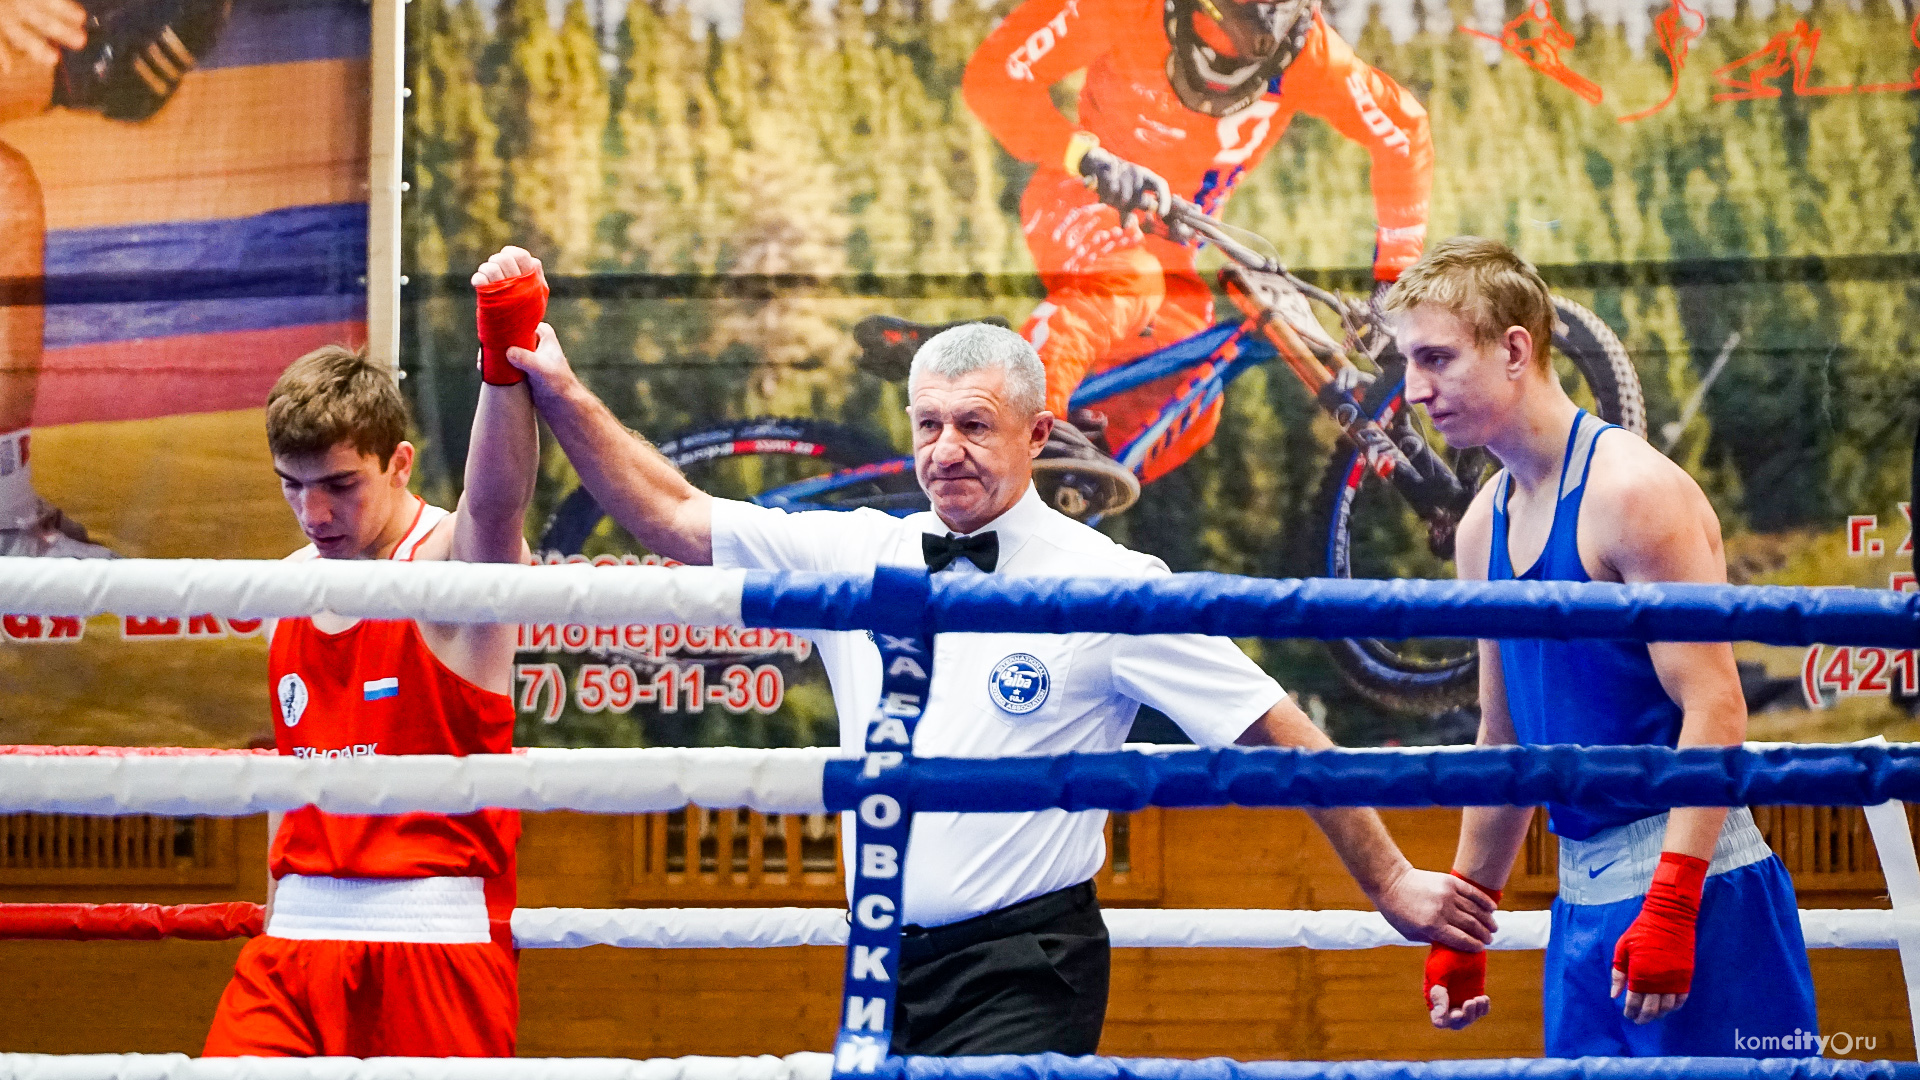 80 боксёров приехали в Комсомольск-на-Амуре для участия в международном турнире